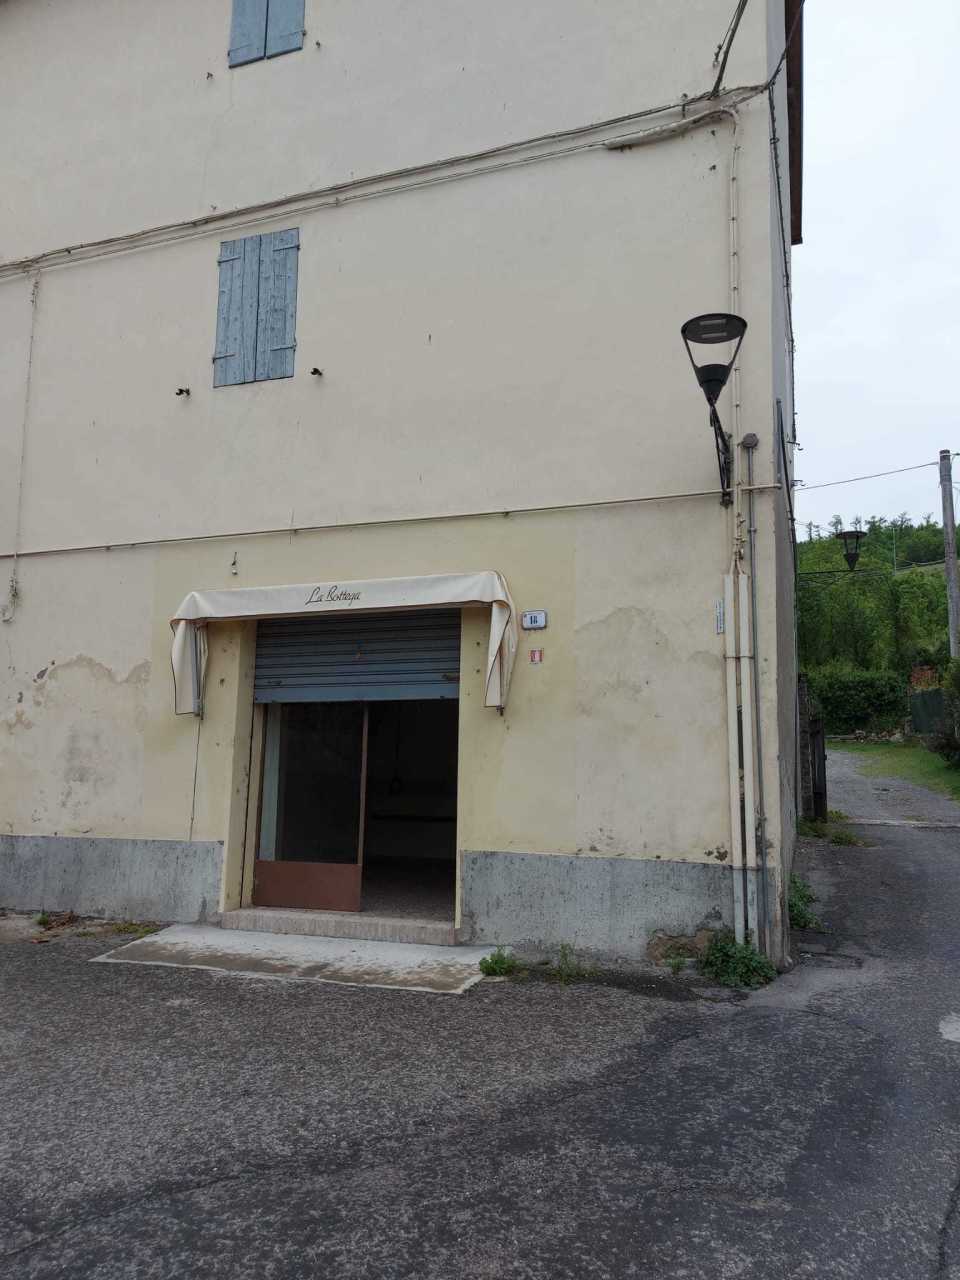 Negozio / Locale in vendita a Fornovo di Taro, 2 locali, prezzo € 10.000 | PortaleAgenzieImmobiliari.it